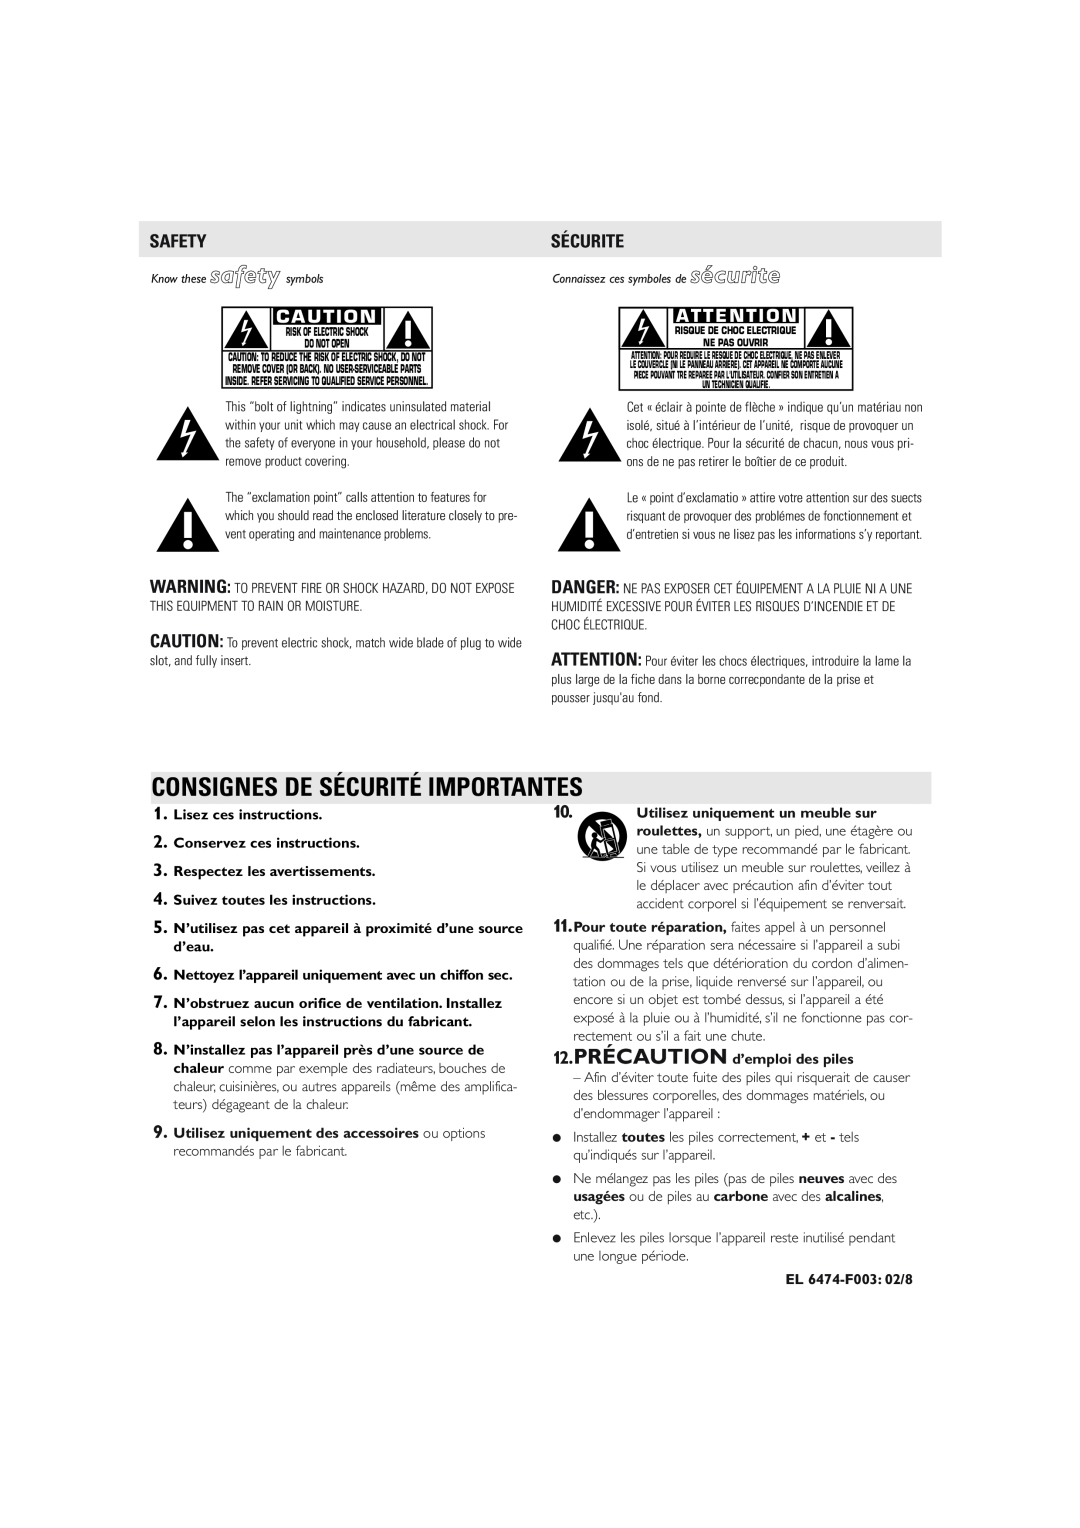 Philips AJ3160 warranty Safety, Sécurite, Lisez ces instructions, Conservez ces instructions, Respectez les avertissements 